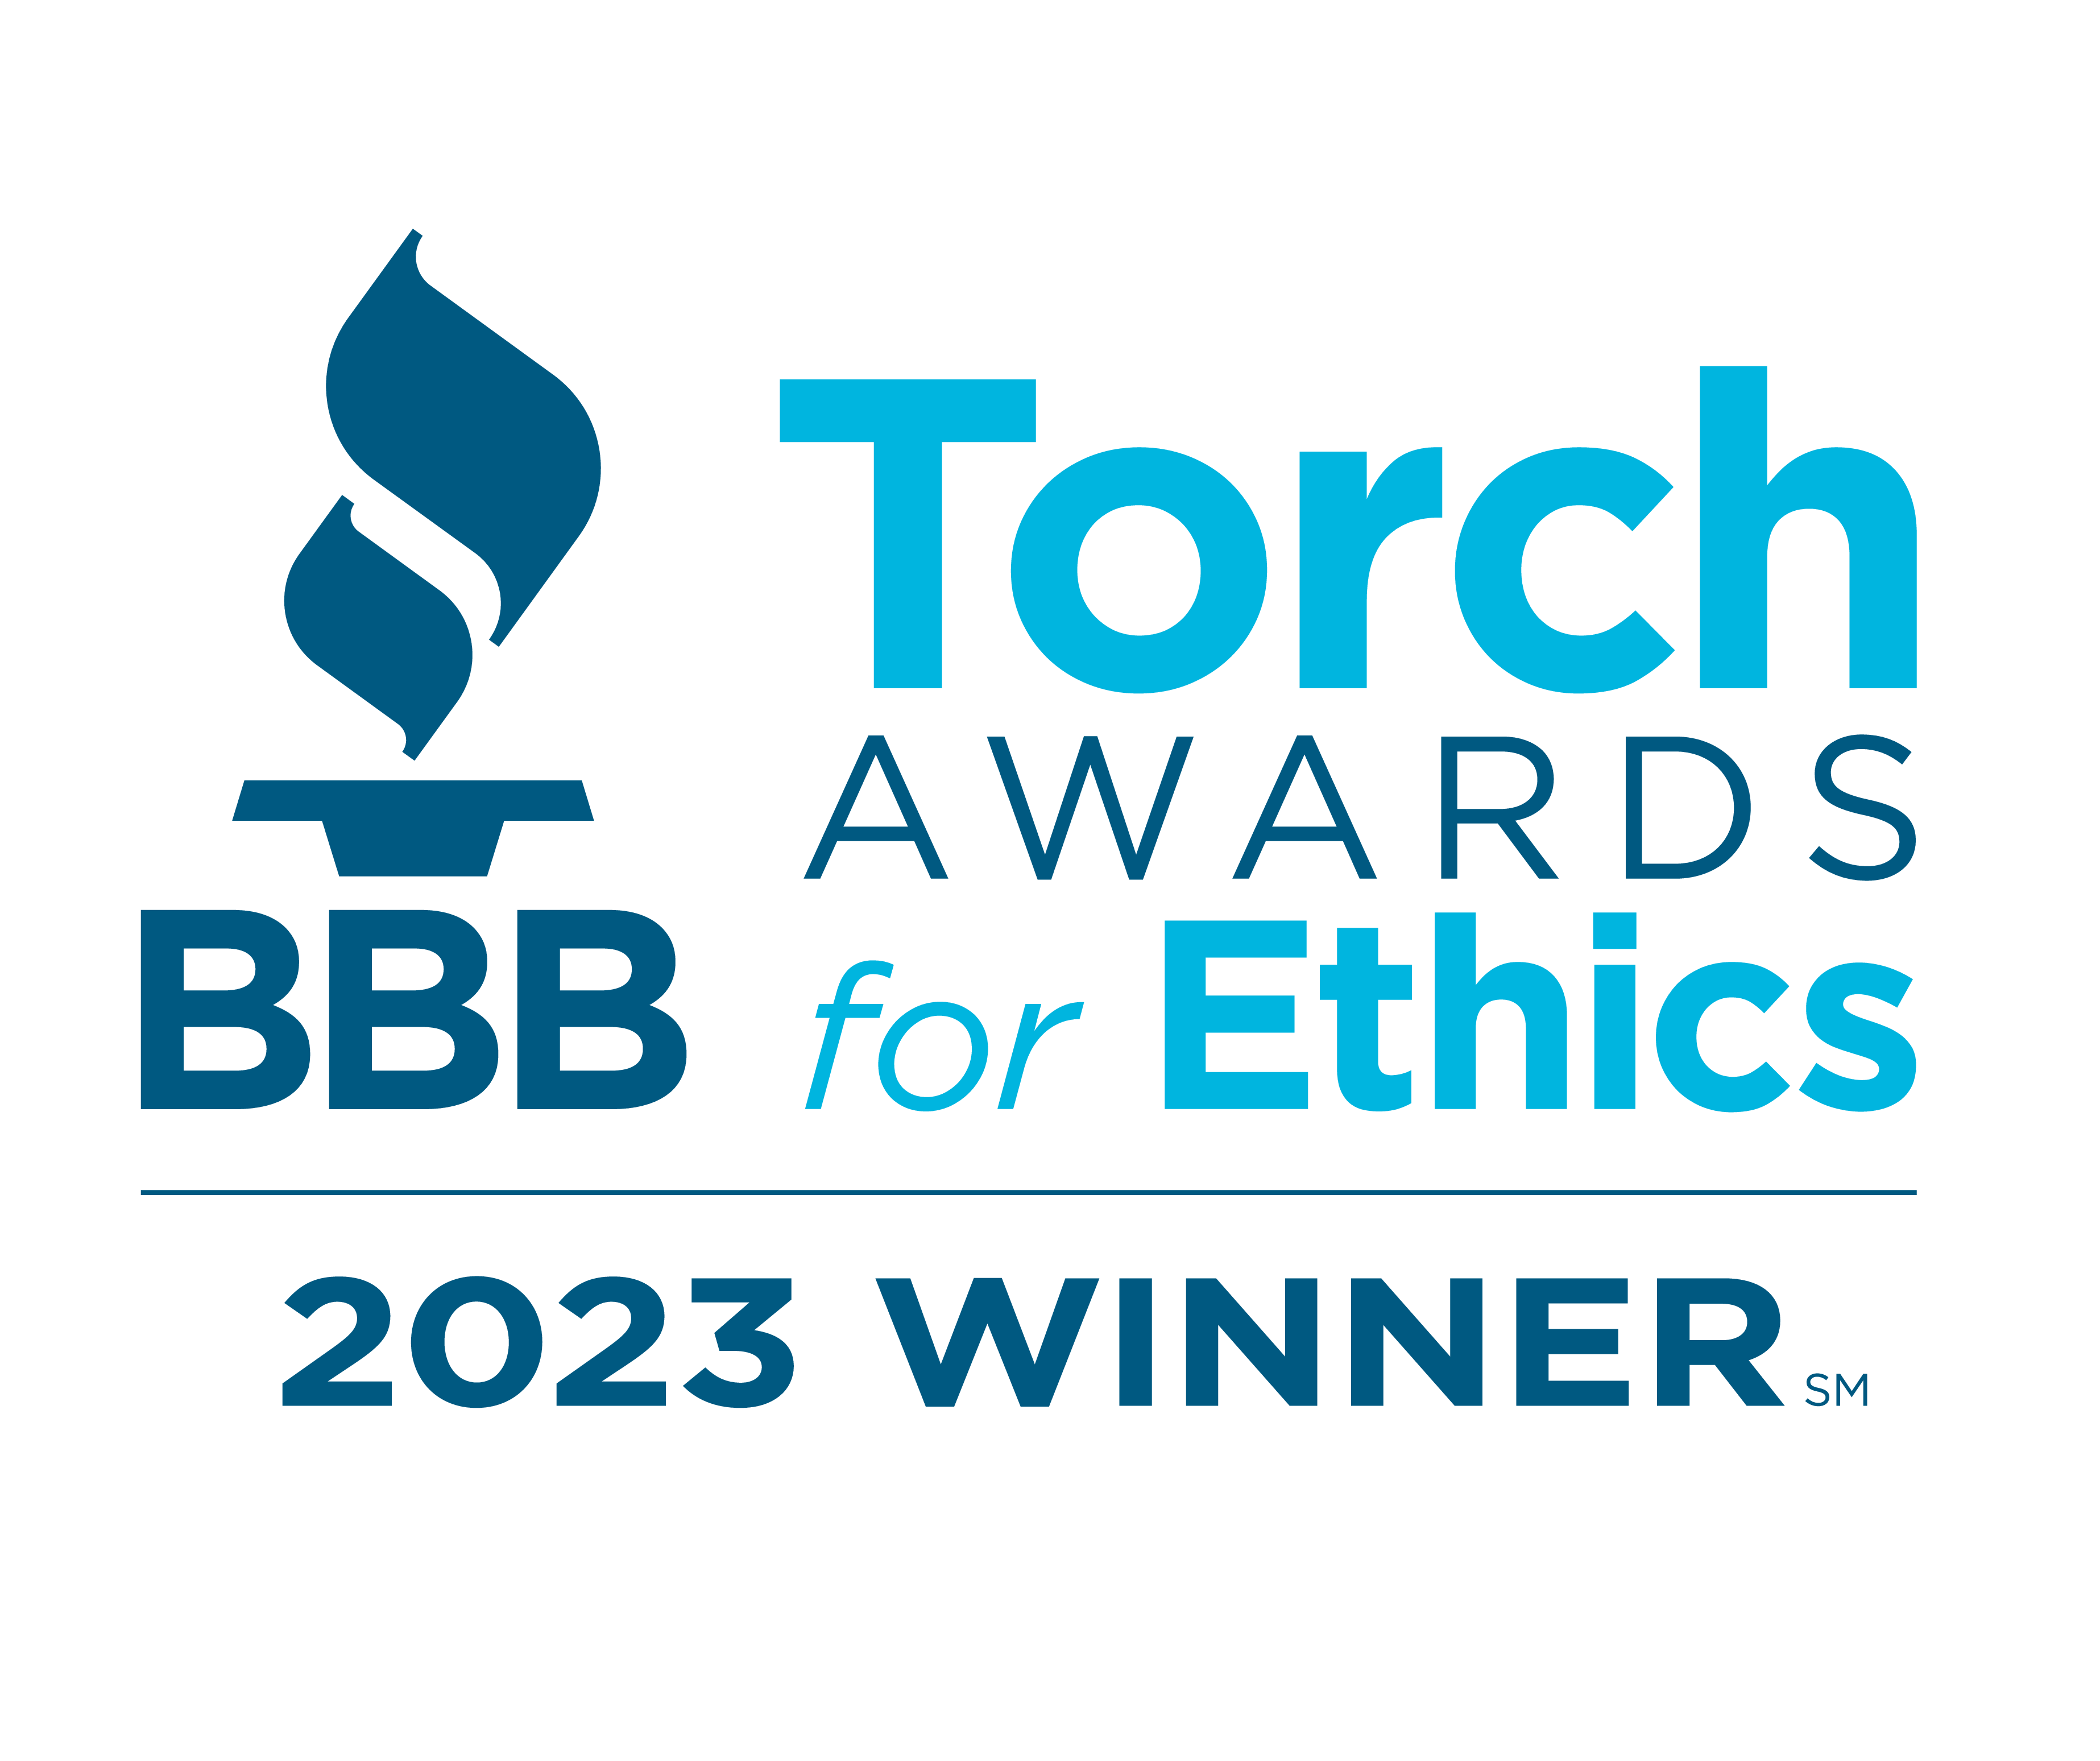 BBB Torch Awards for Ethics 2023 Winner